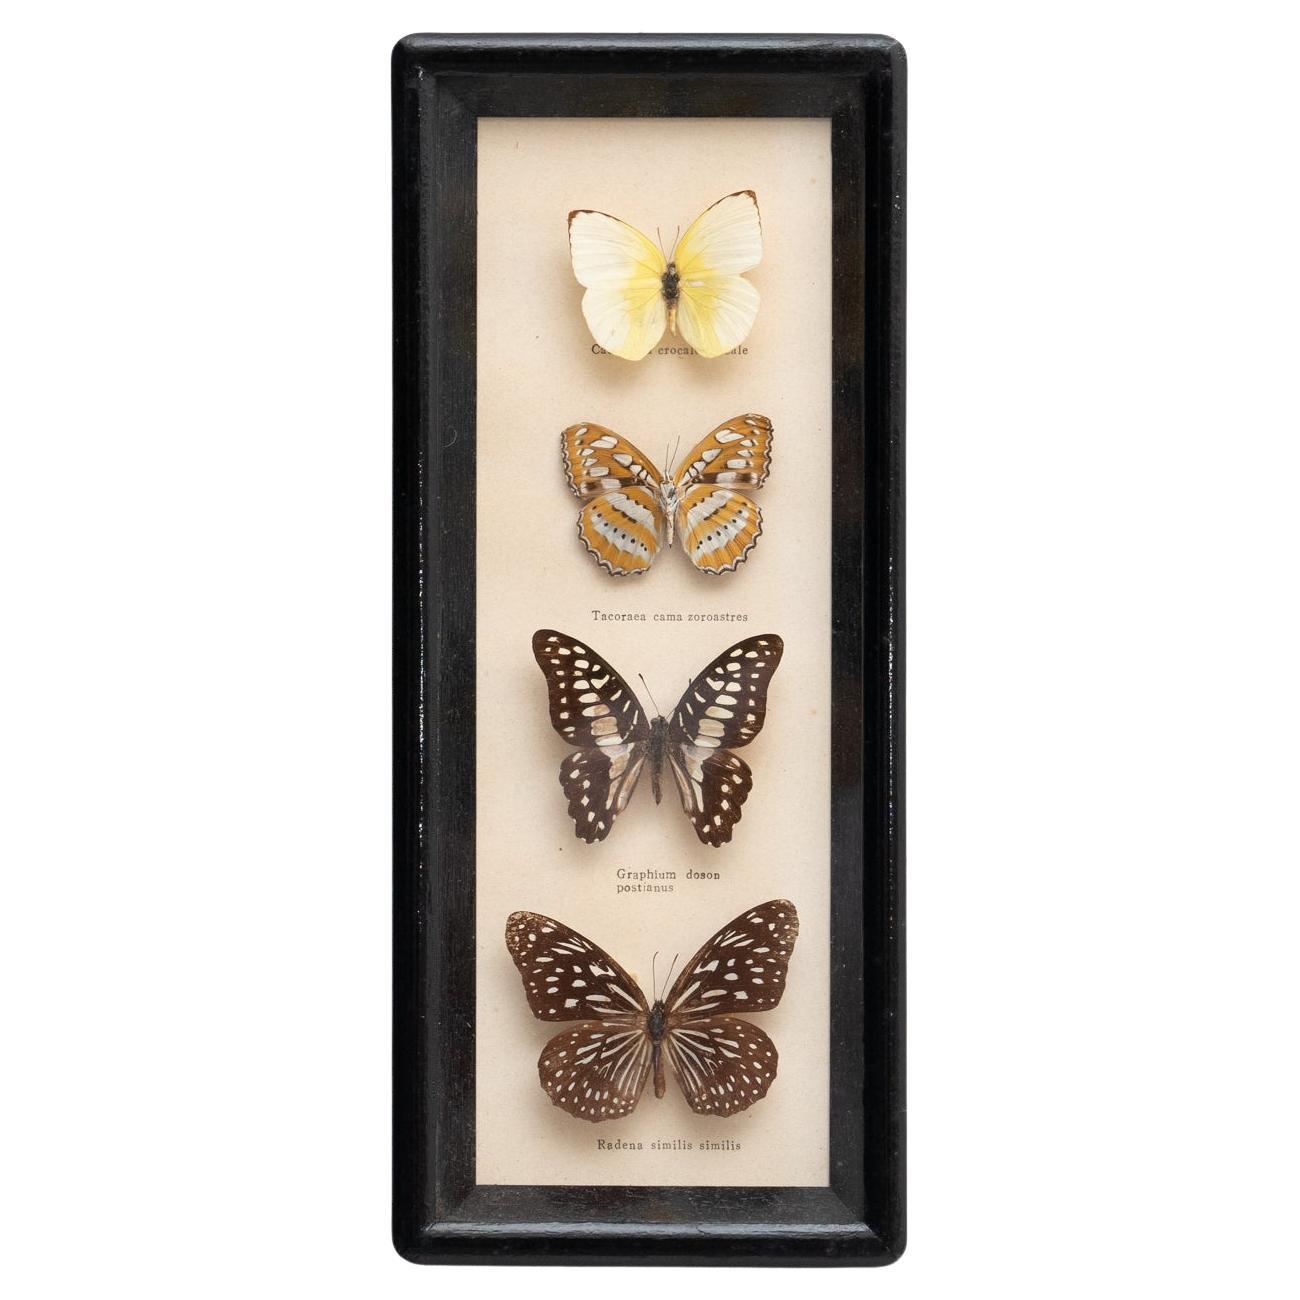 Framed Butterflies Artwork, circa 1960